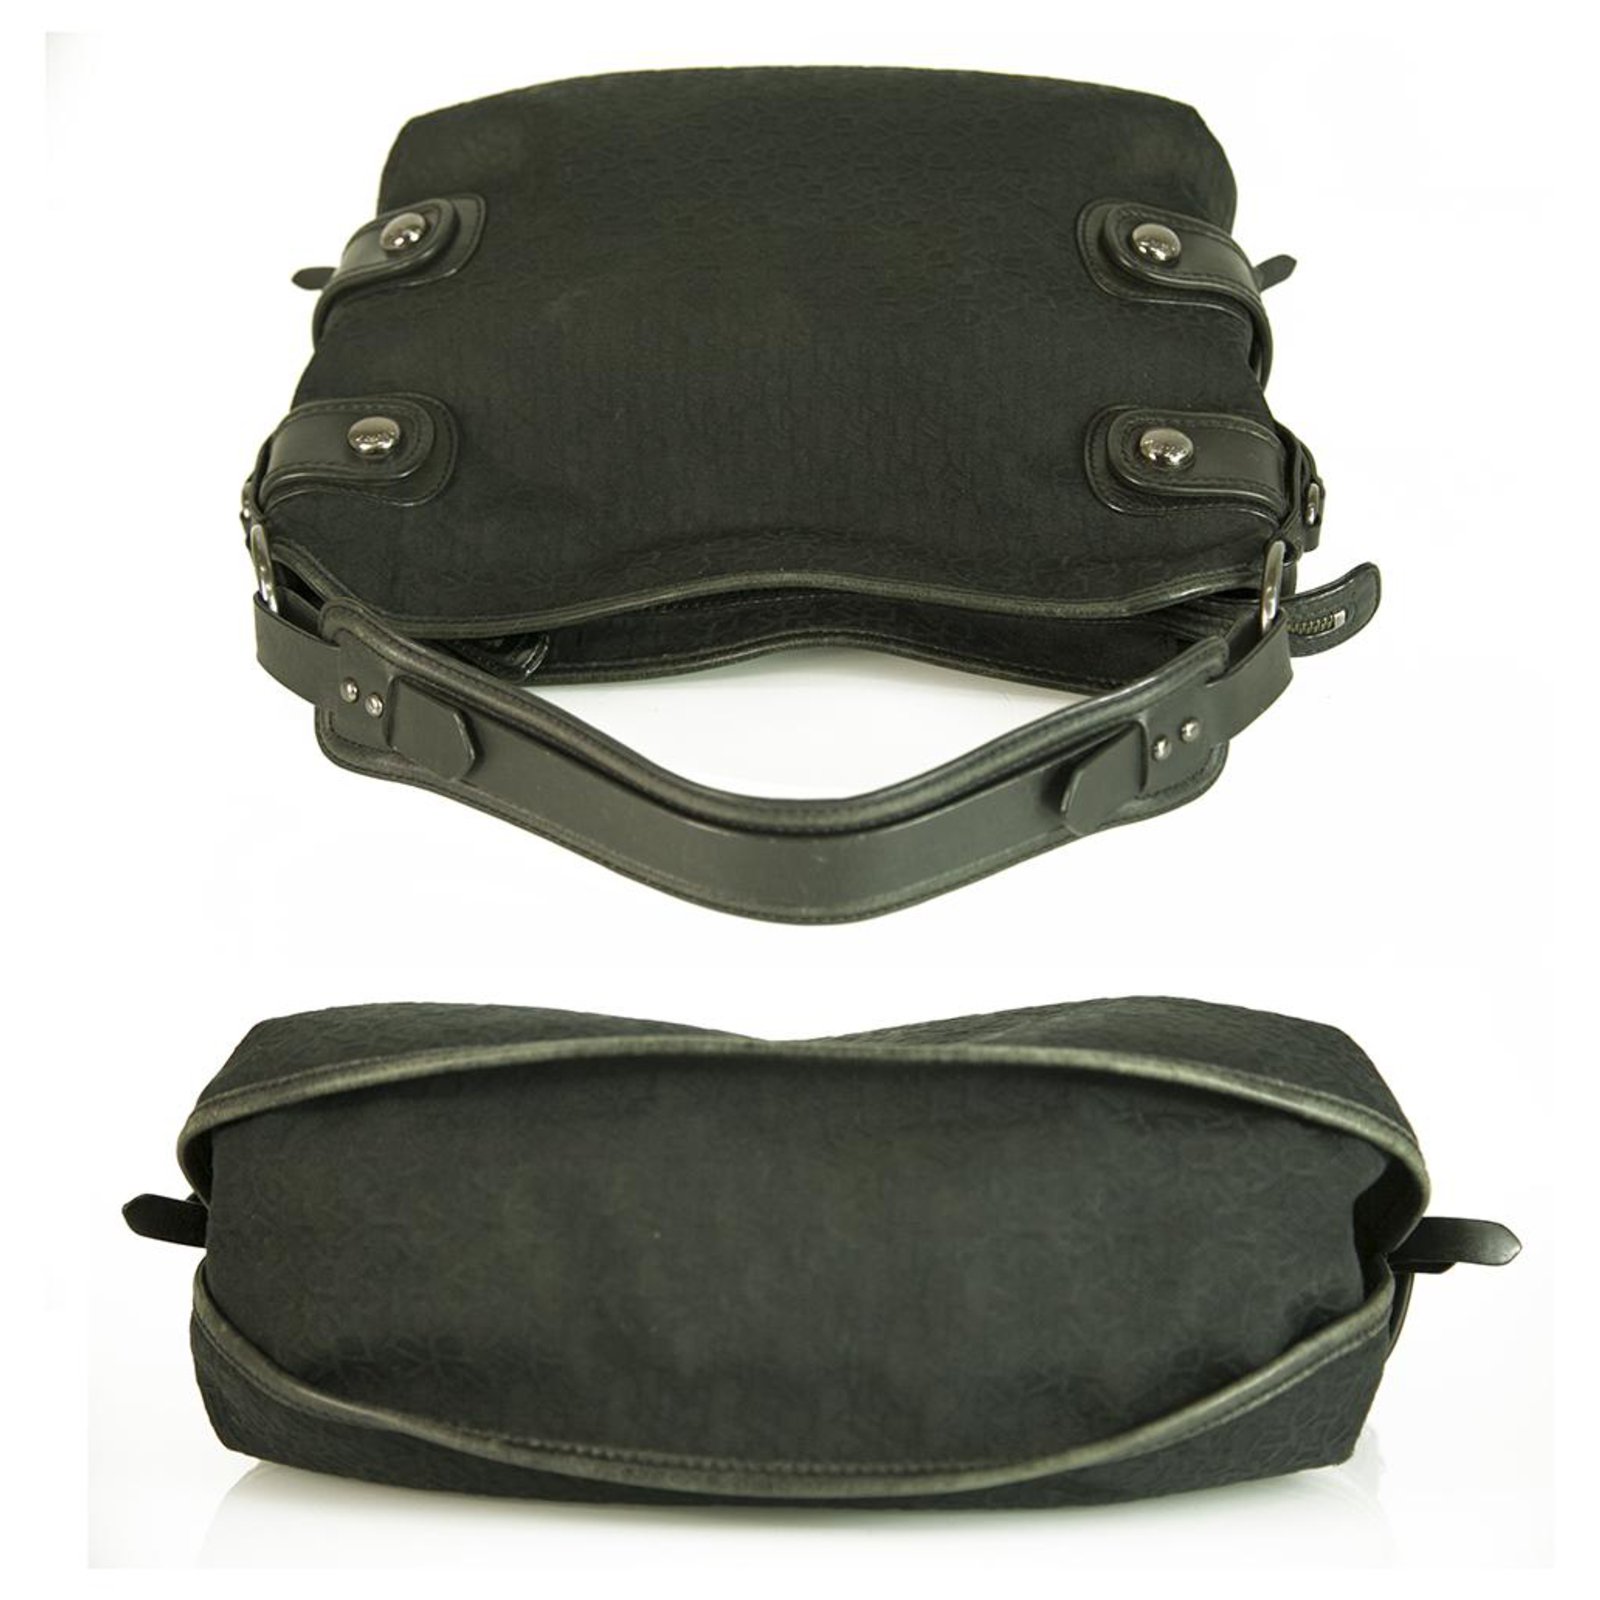 Donna Karan DKNY Signature Canvas Black Leather Hobo Shoulder bag Handbag